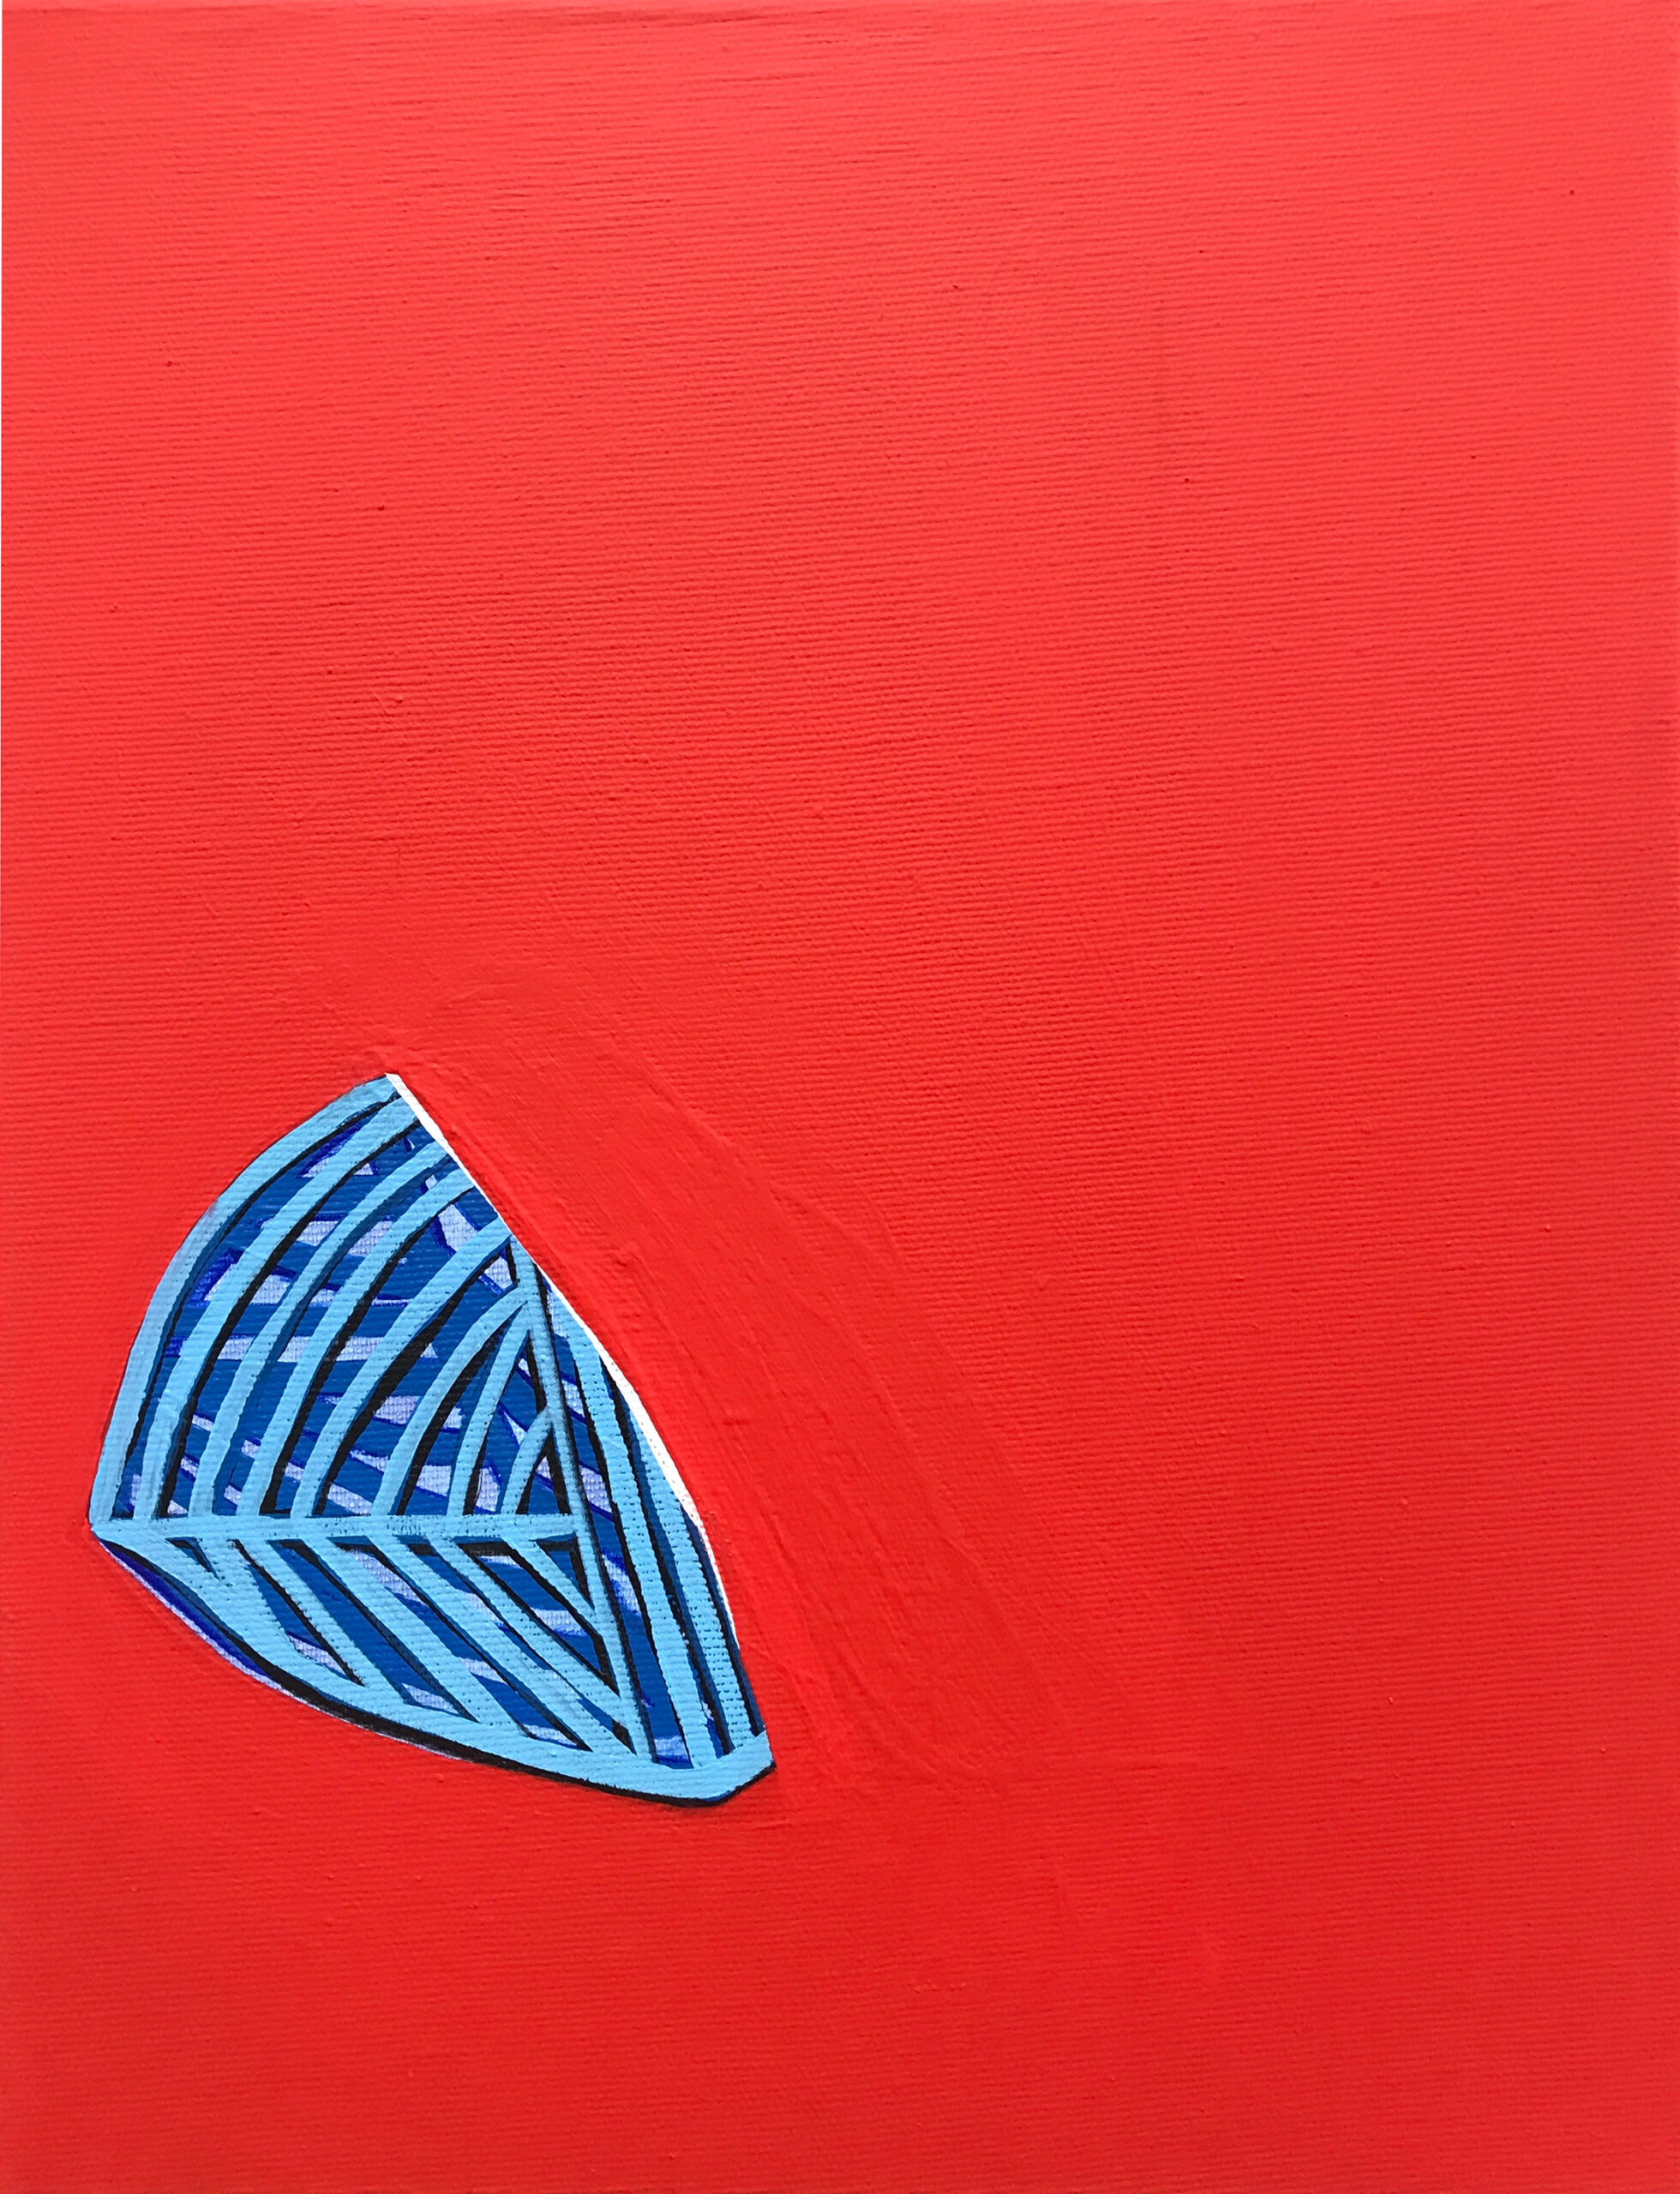 Soo Kyoung Lee, « ARC 1 », 2020, Acrylique sur toile, 35×27cm.